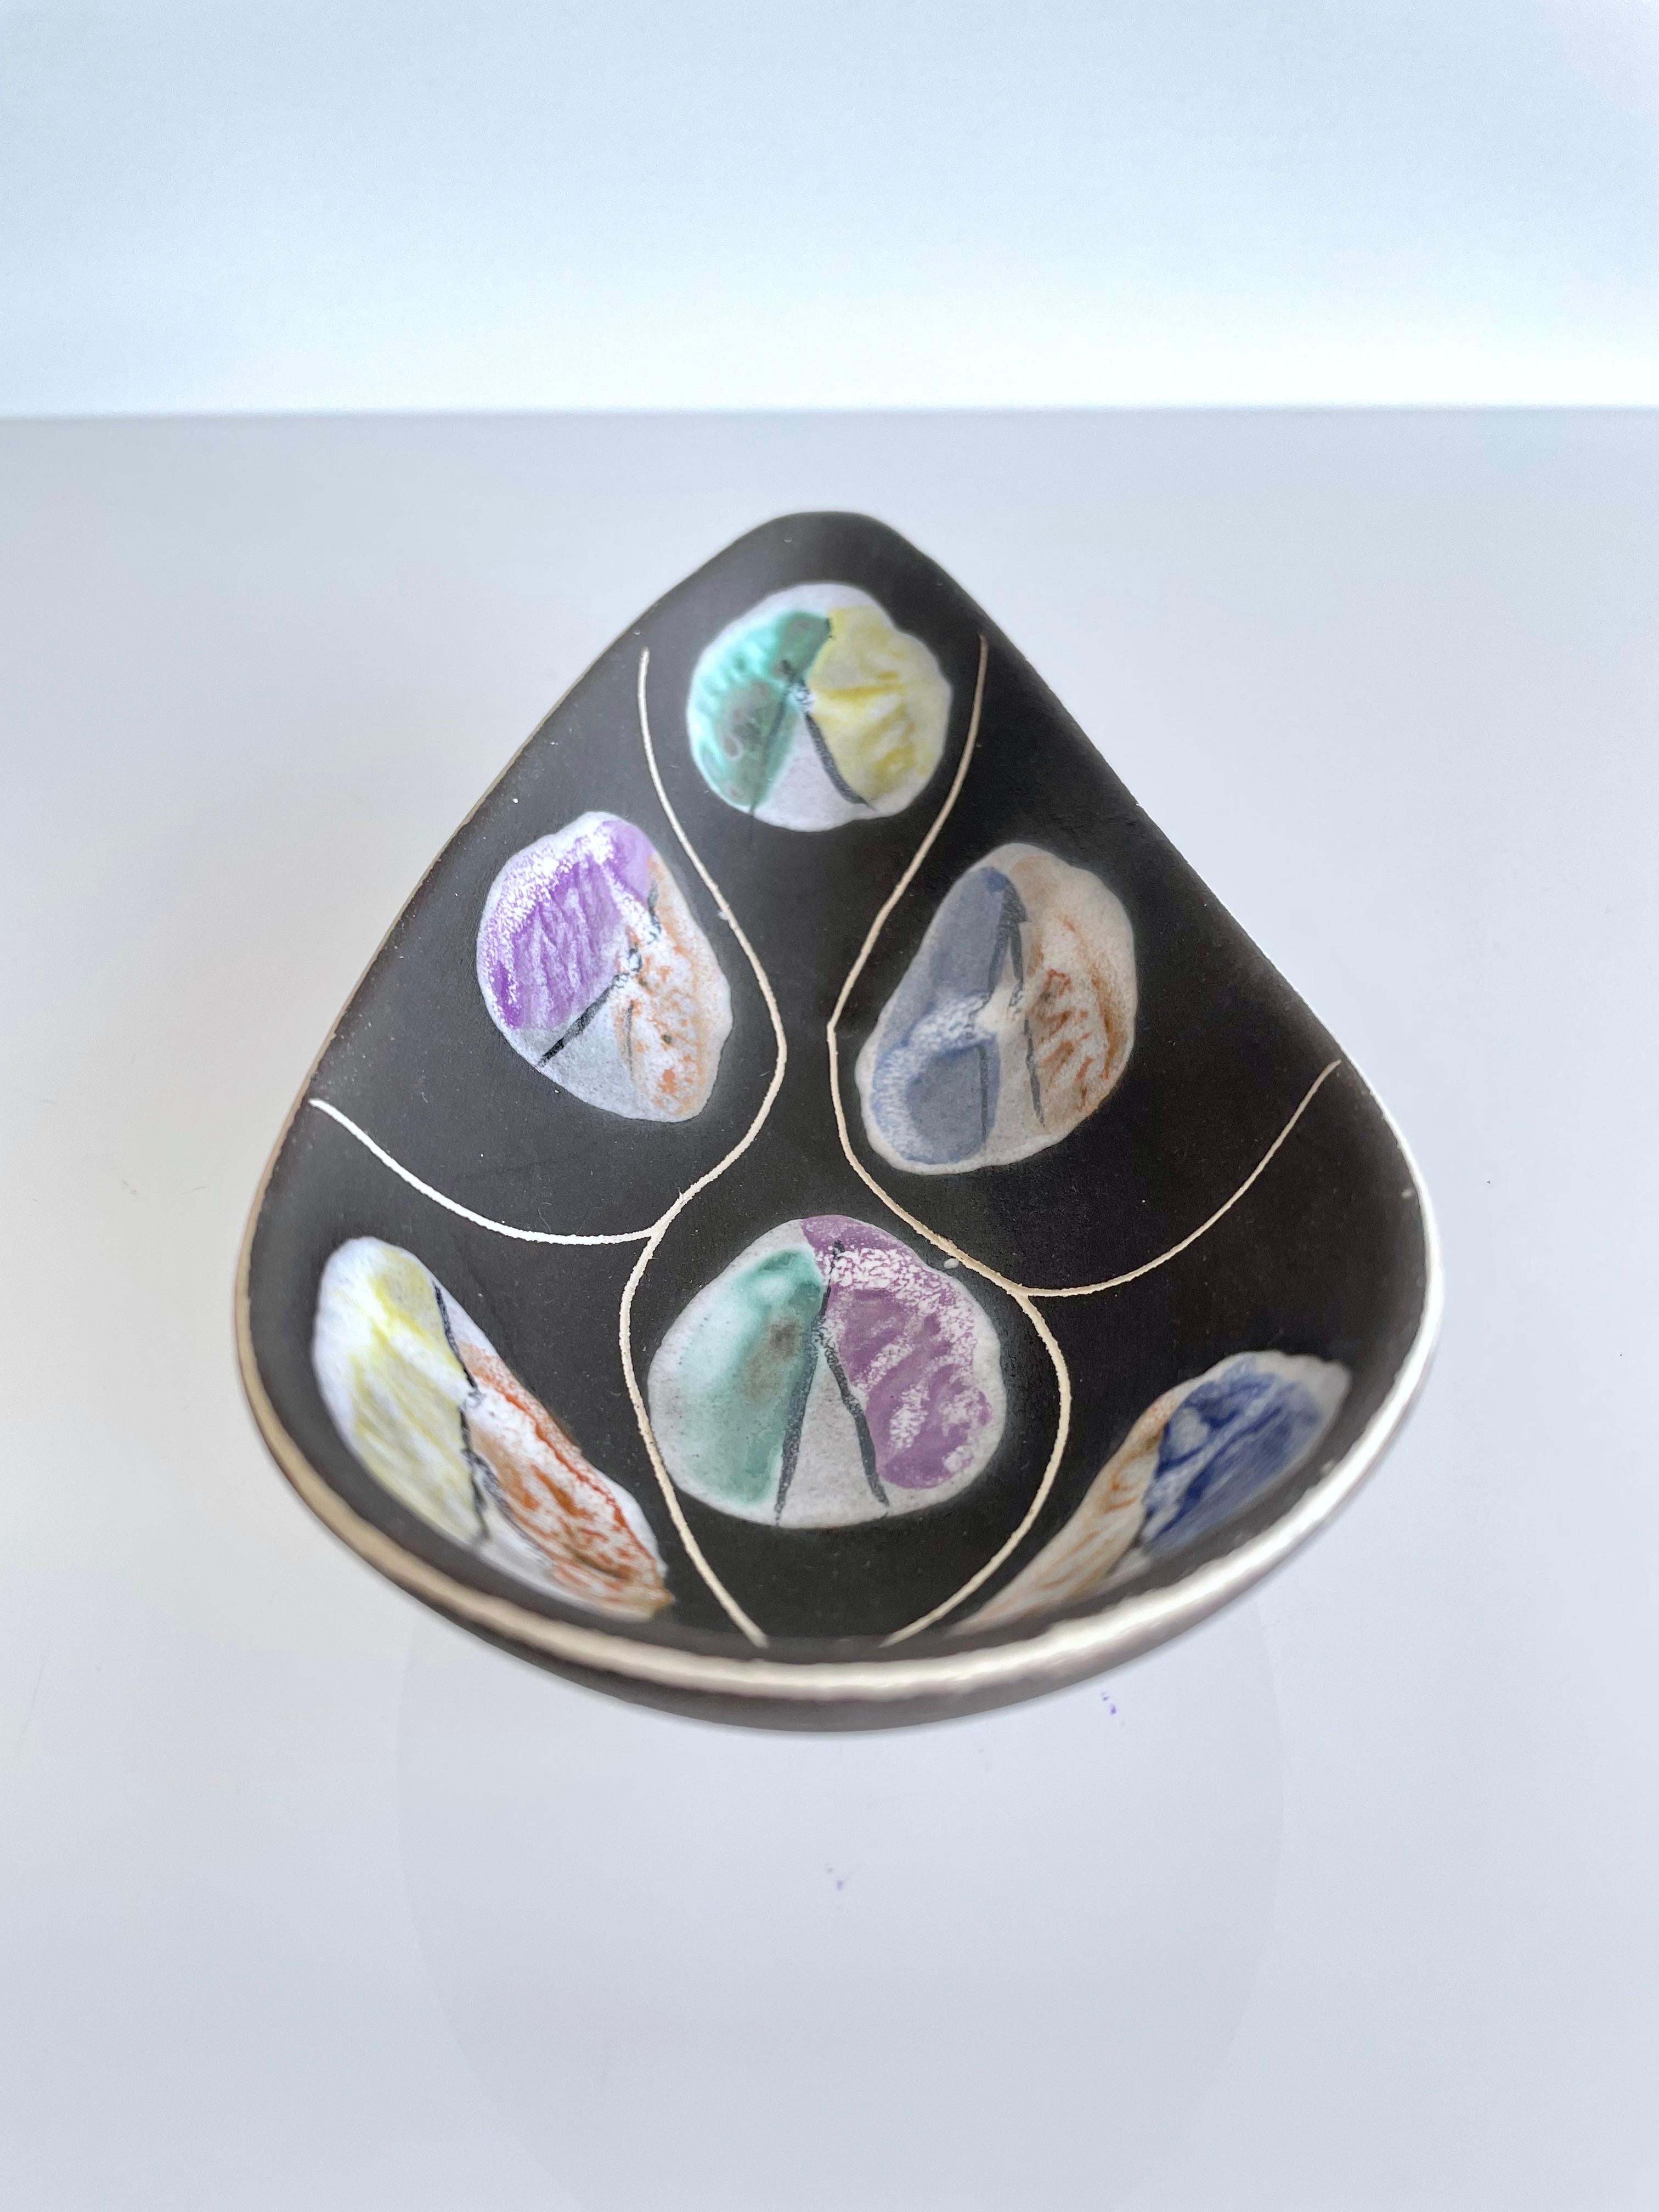 Dekorative Porzellanschale von Bodo Mans aus der Mitte des Jahrhunderts, hergestellt von Bay Keramik (W. Deutschland) in den späten 1950er und frühen 1960er Jahren. 
Dunkle matte Glasur mit einem glänzenden Pastellmuster in verschiedenen Farbtönen.